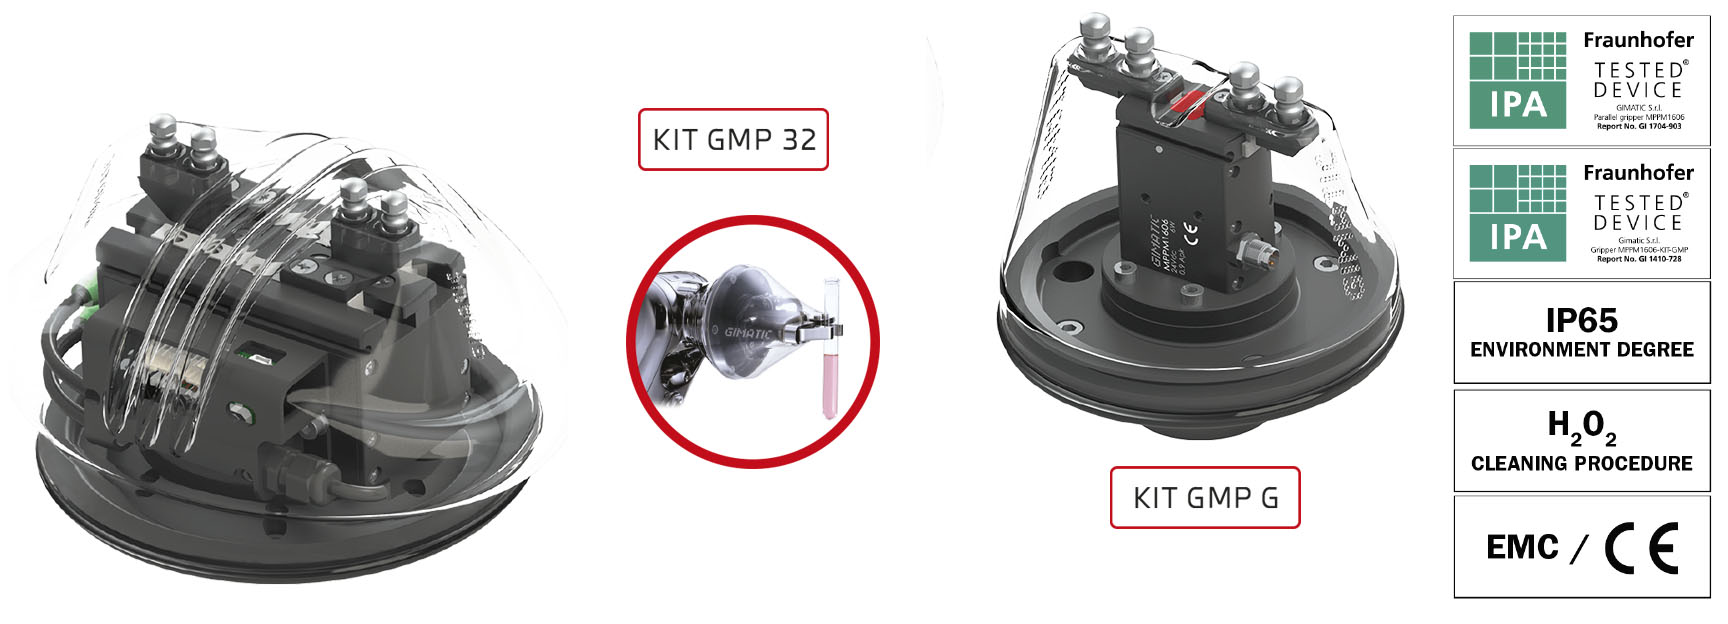 GIMATIC Iberia presenta los kits GMP, solución innovadora para la manipulación automatizada en sala blanca